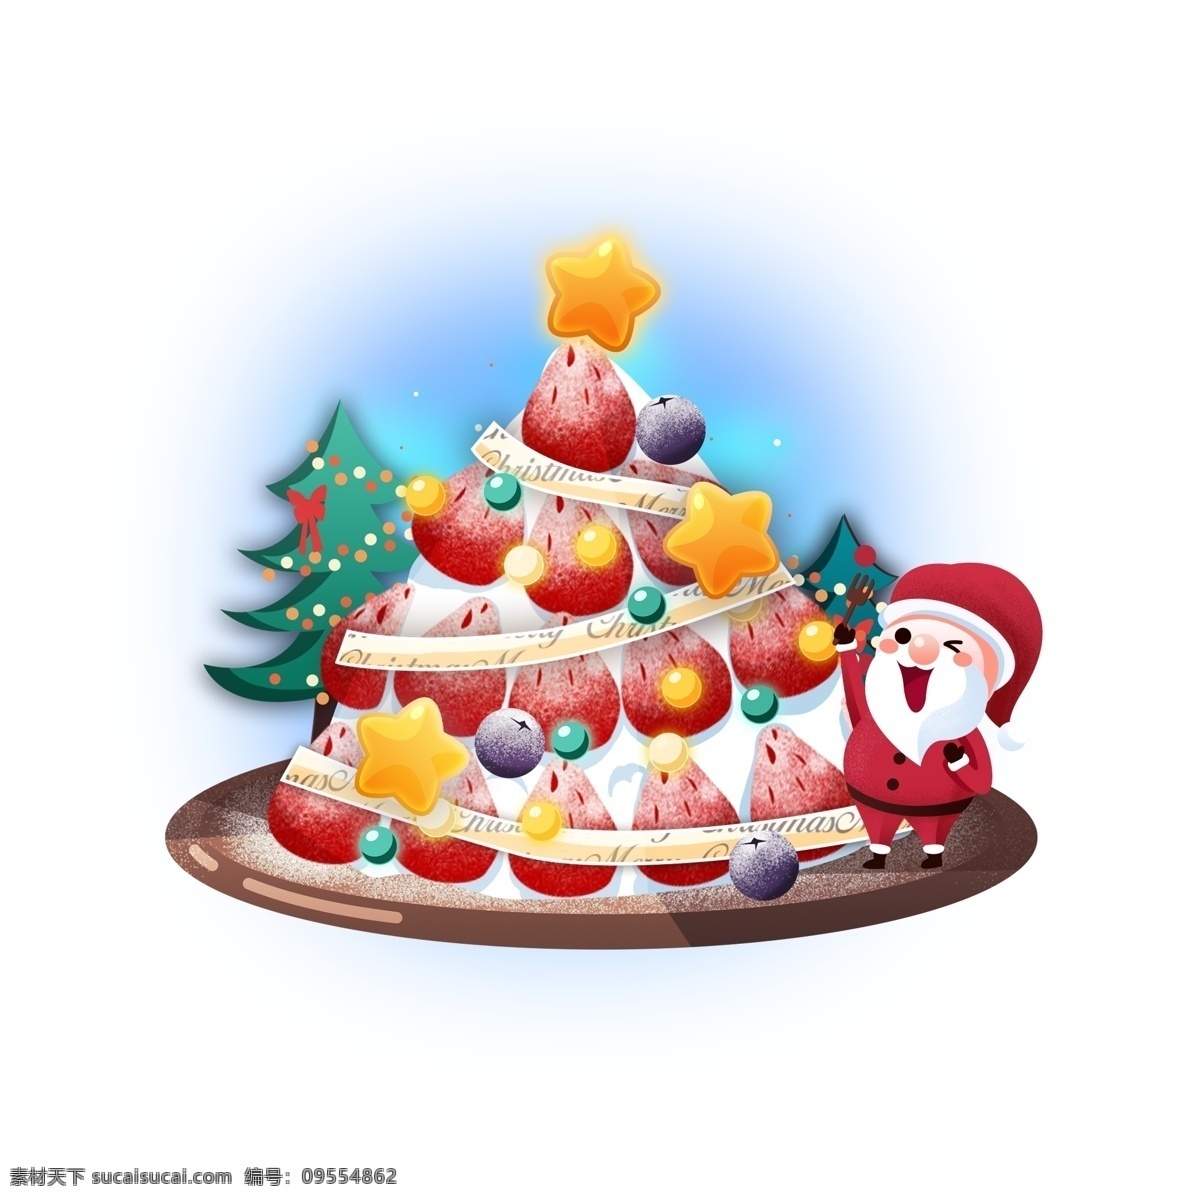 平安夜 圣诞 节日 蛋糕 商用 圣诞节 圣诞树 卡通 可爱 圣诞老人 草莓 草莓塔 五角星